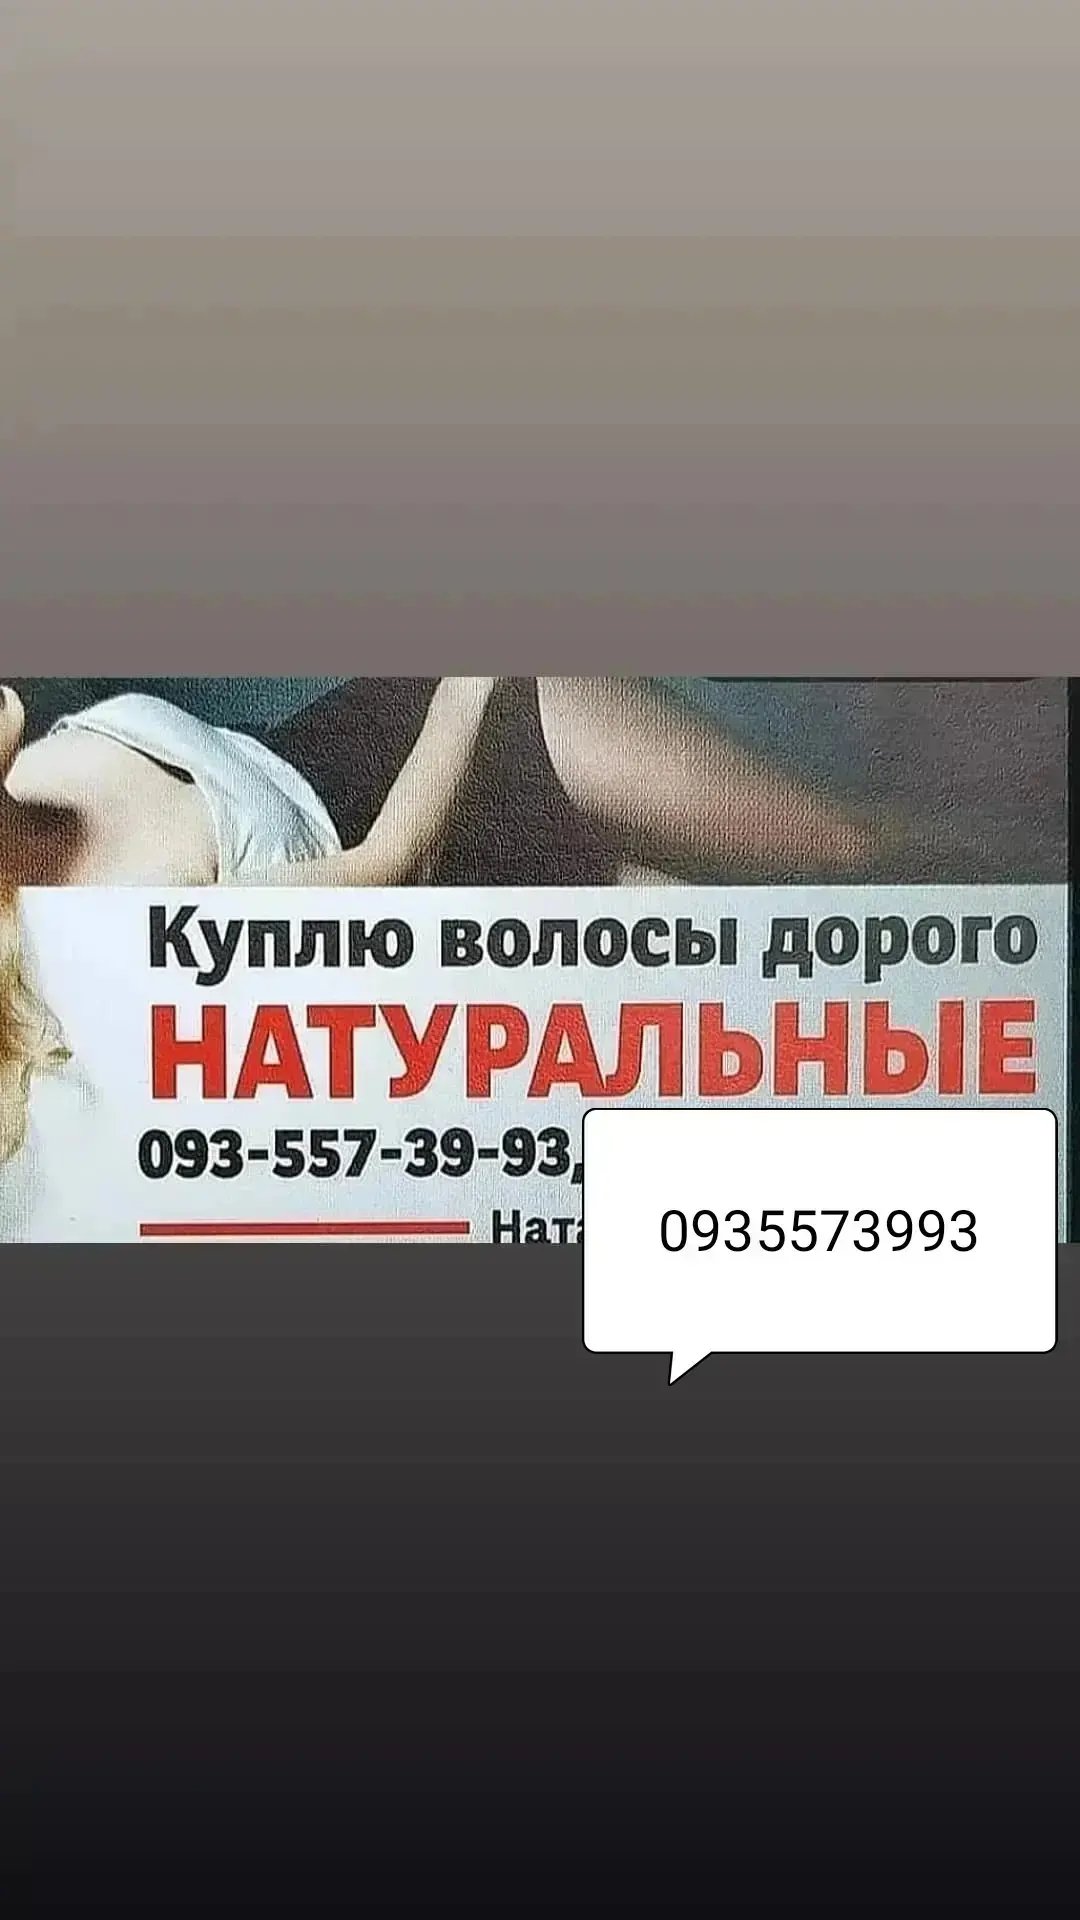 Продать волоссы Киеве-куплю волосся Київ -0935573993 - изображение 1